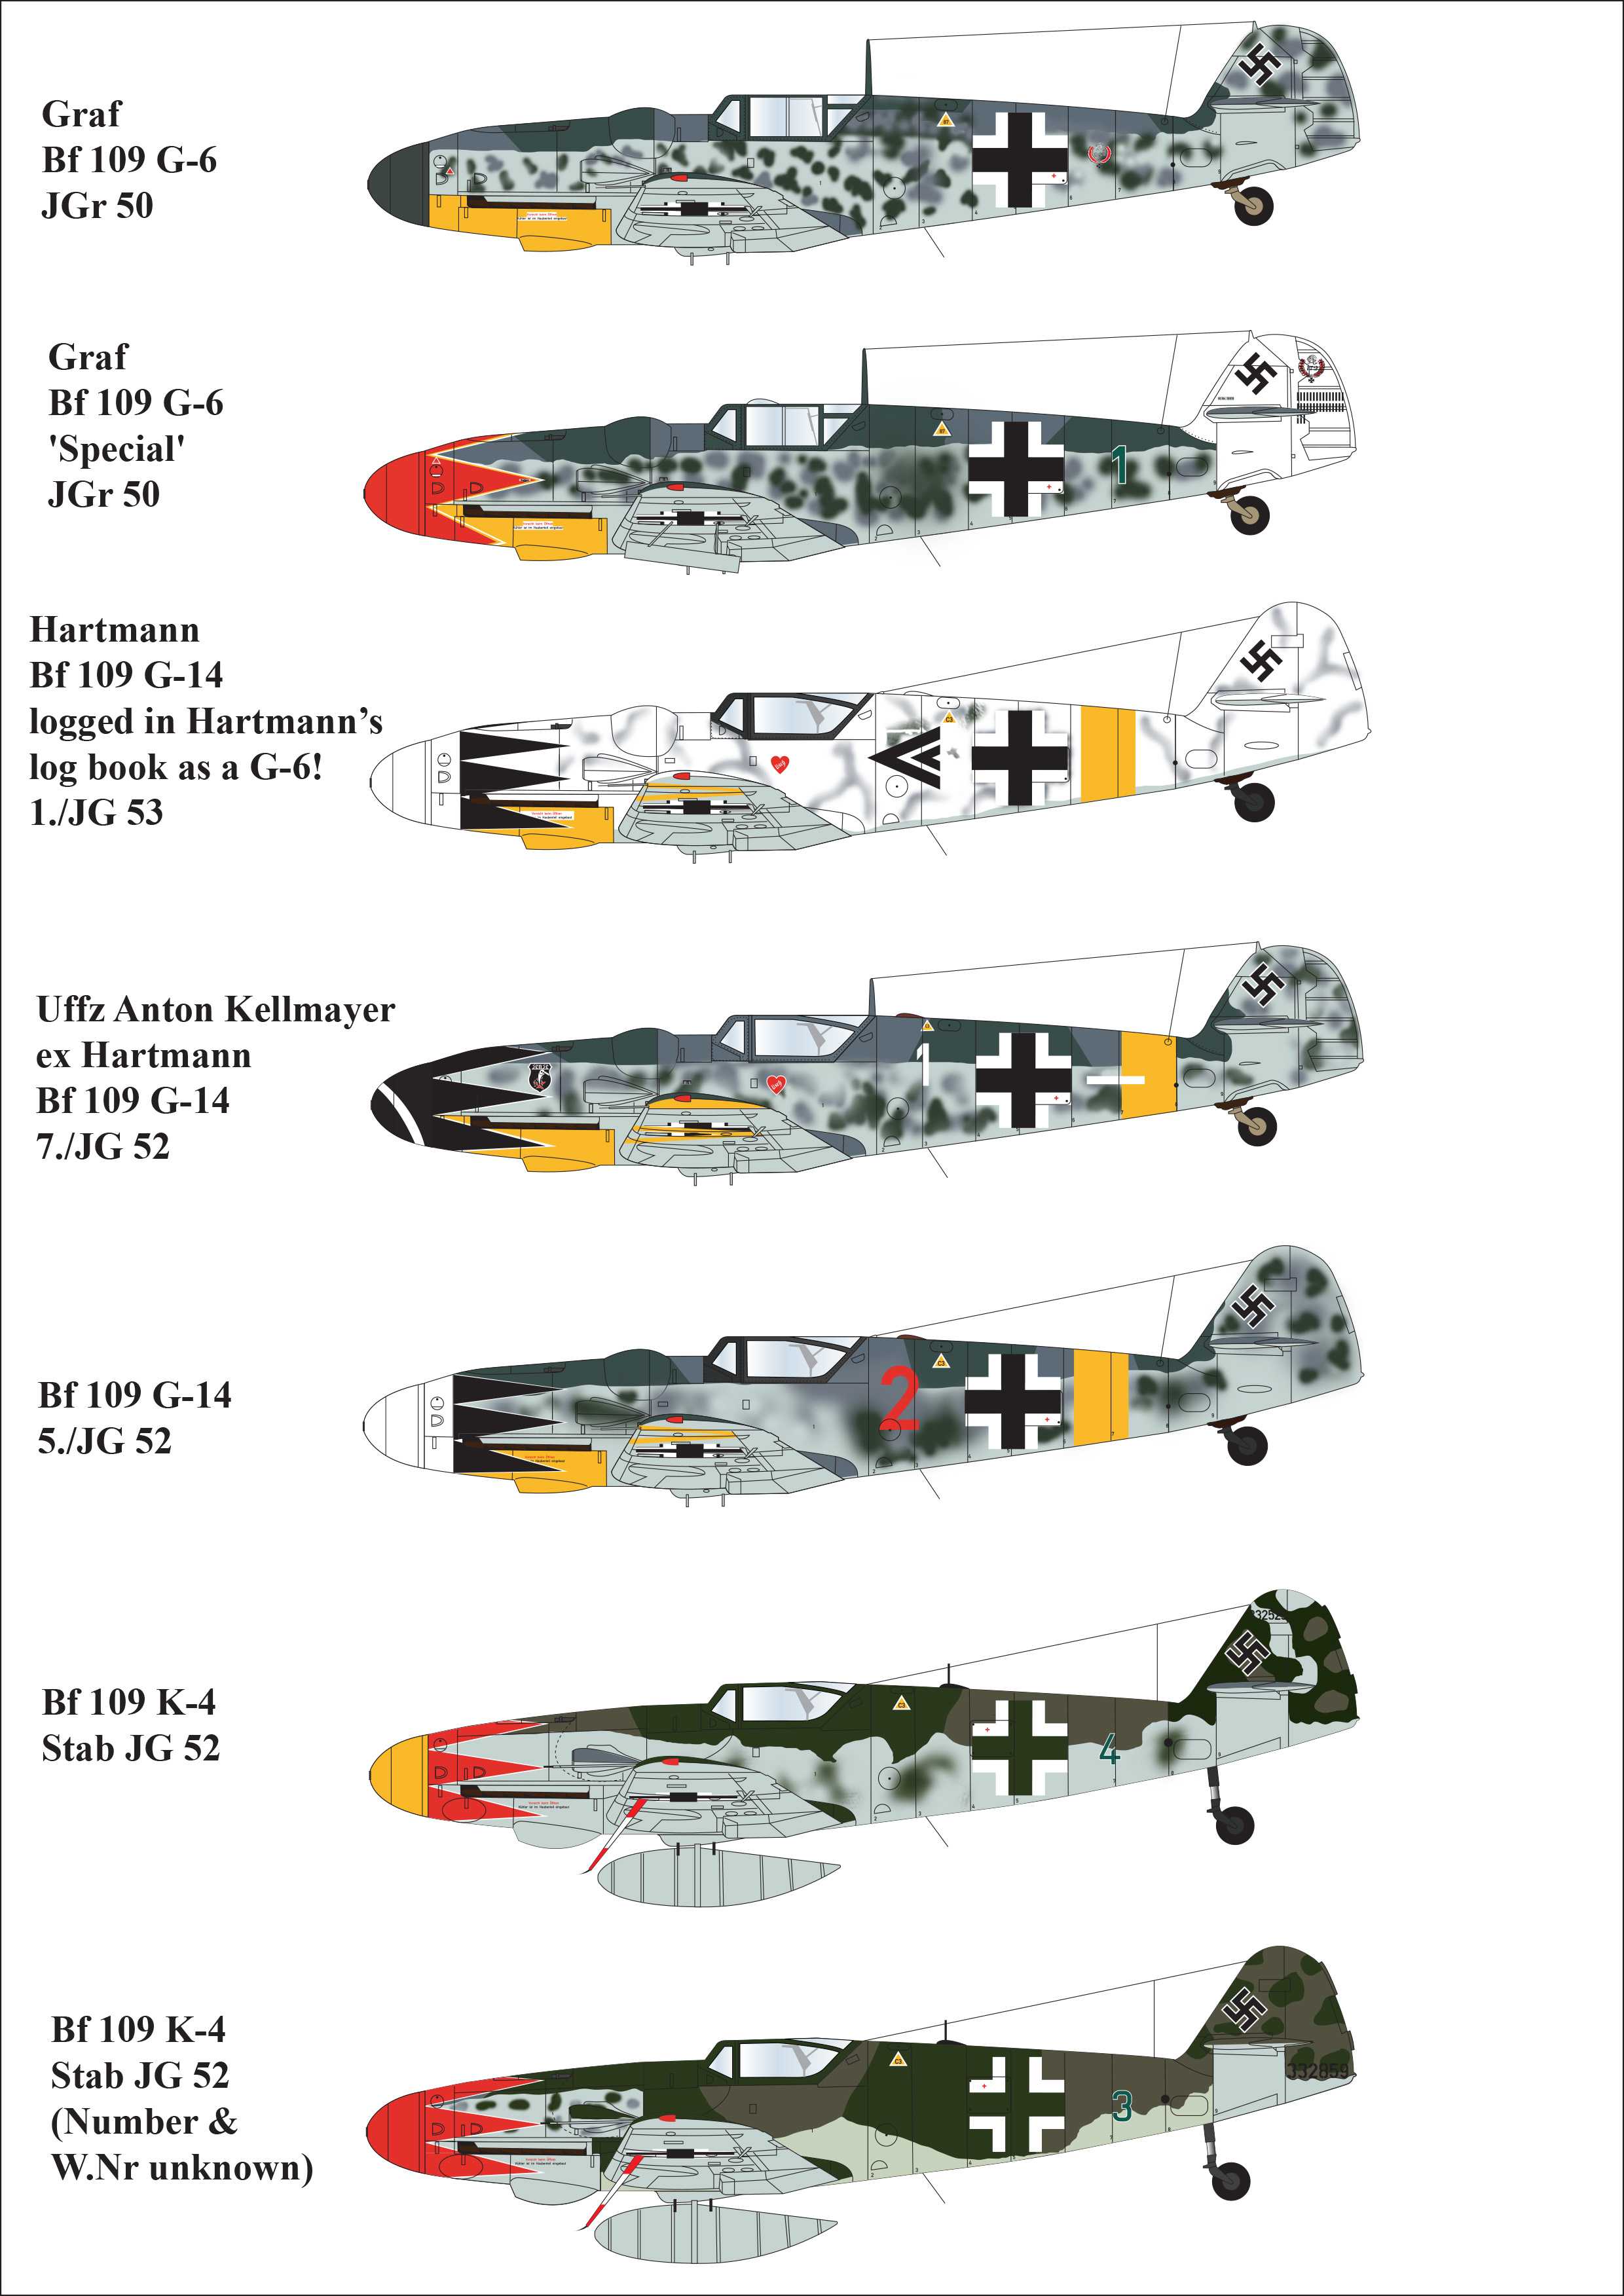  Aims Décal Tulipe Messerschmitt Bf-109G-6 / Bf-109G-14 / Bf-109K-4-1/